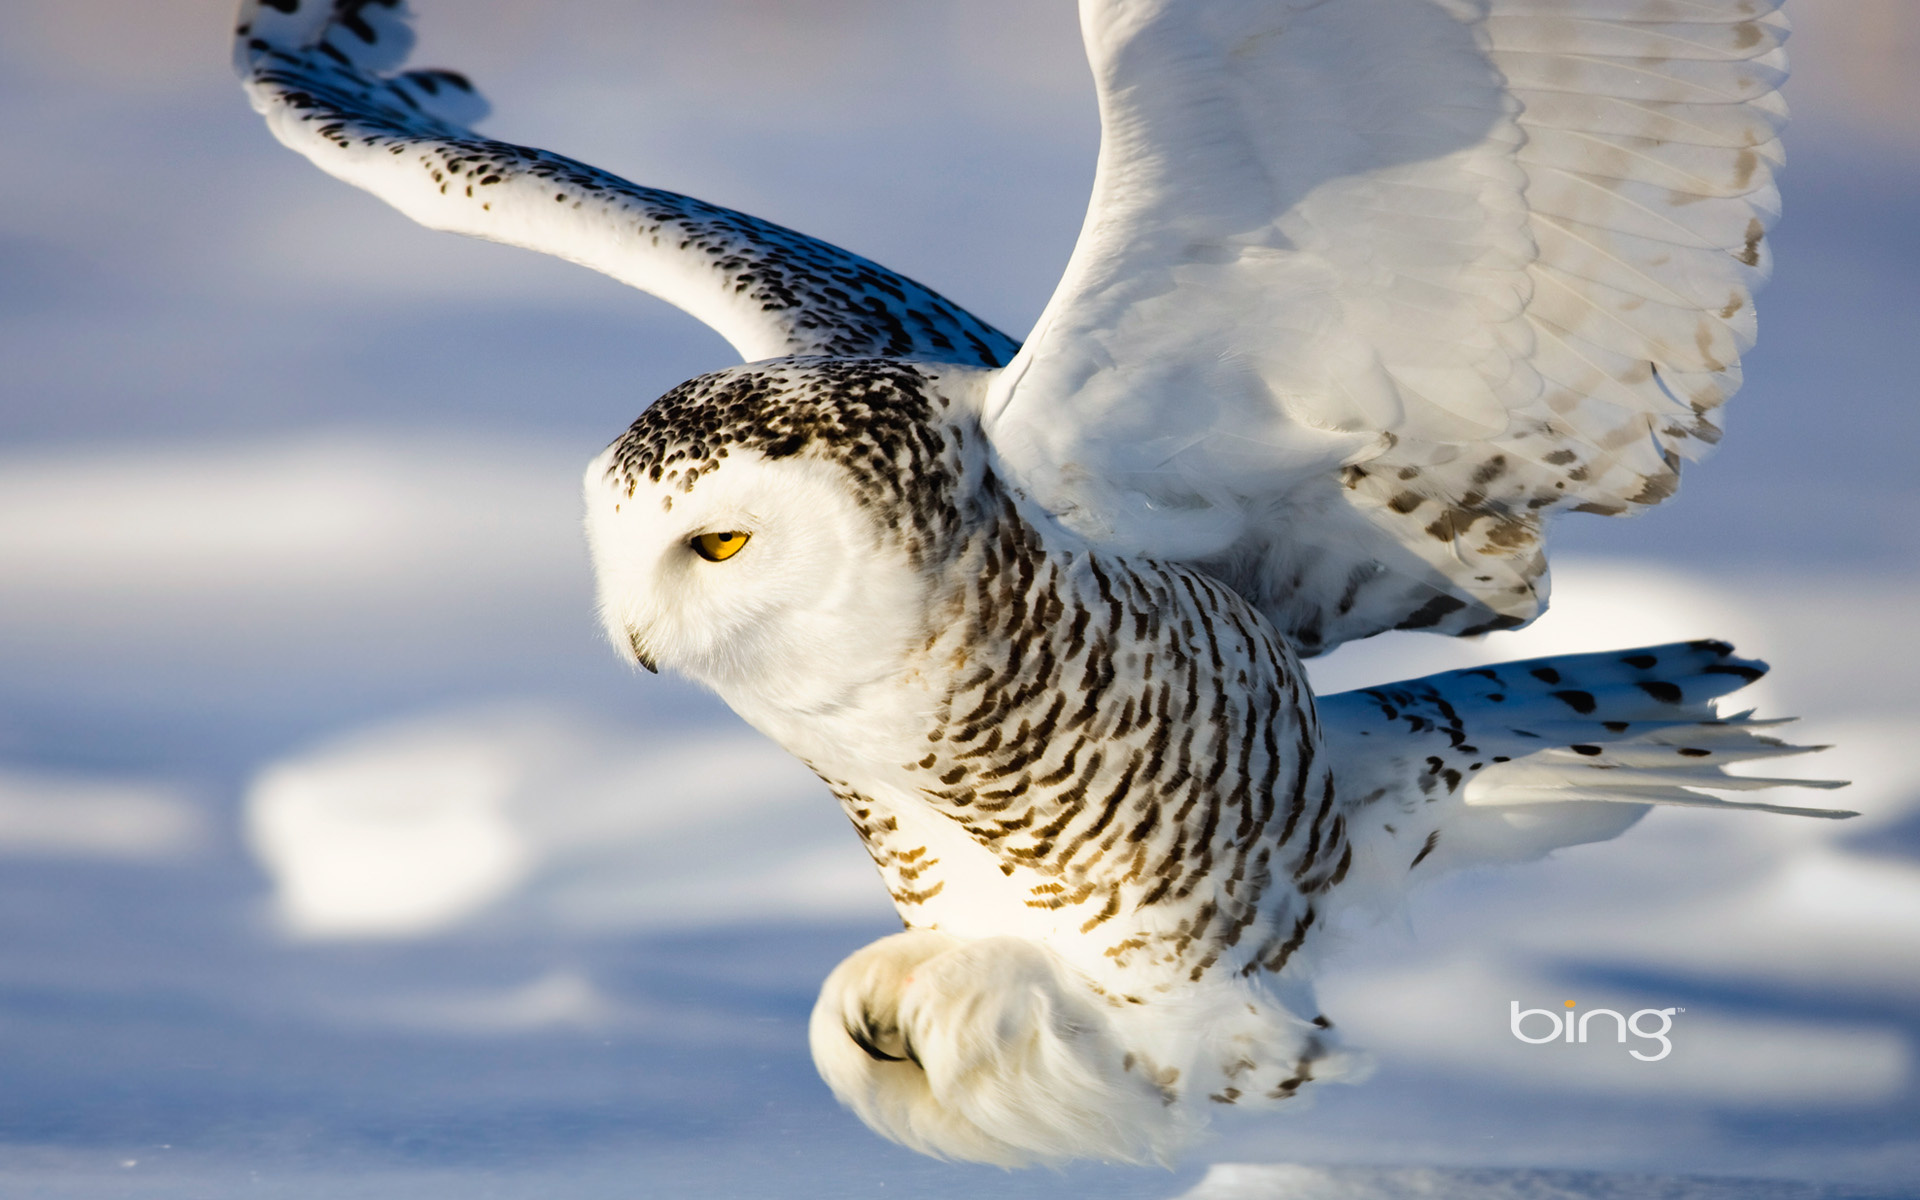 Snowy Owl HD Backgrounds WallpapersCharlie